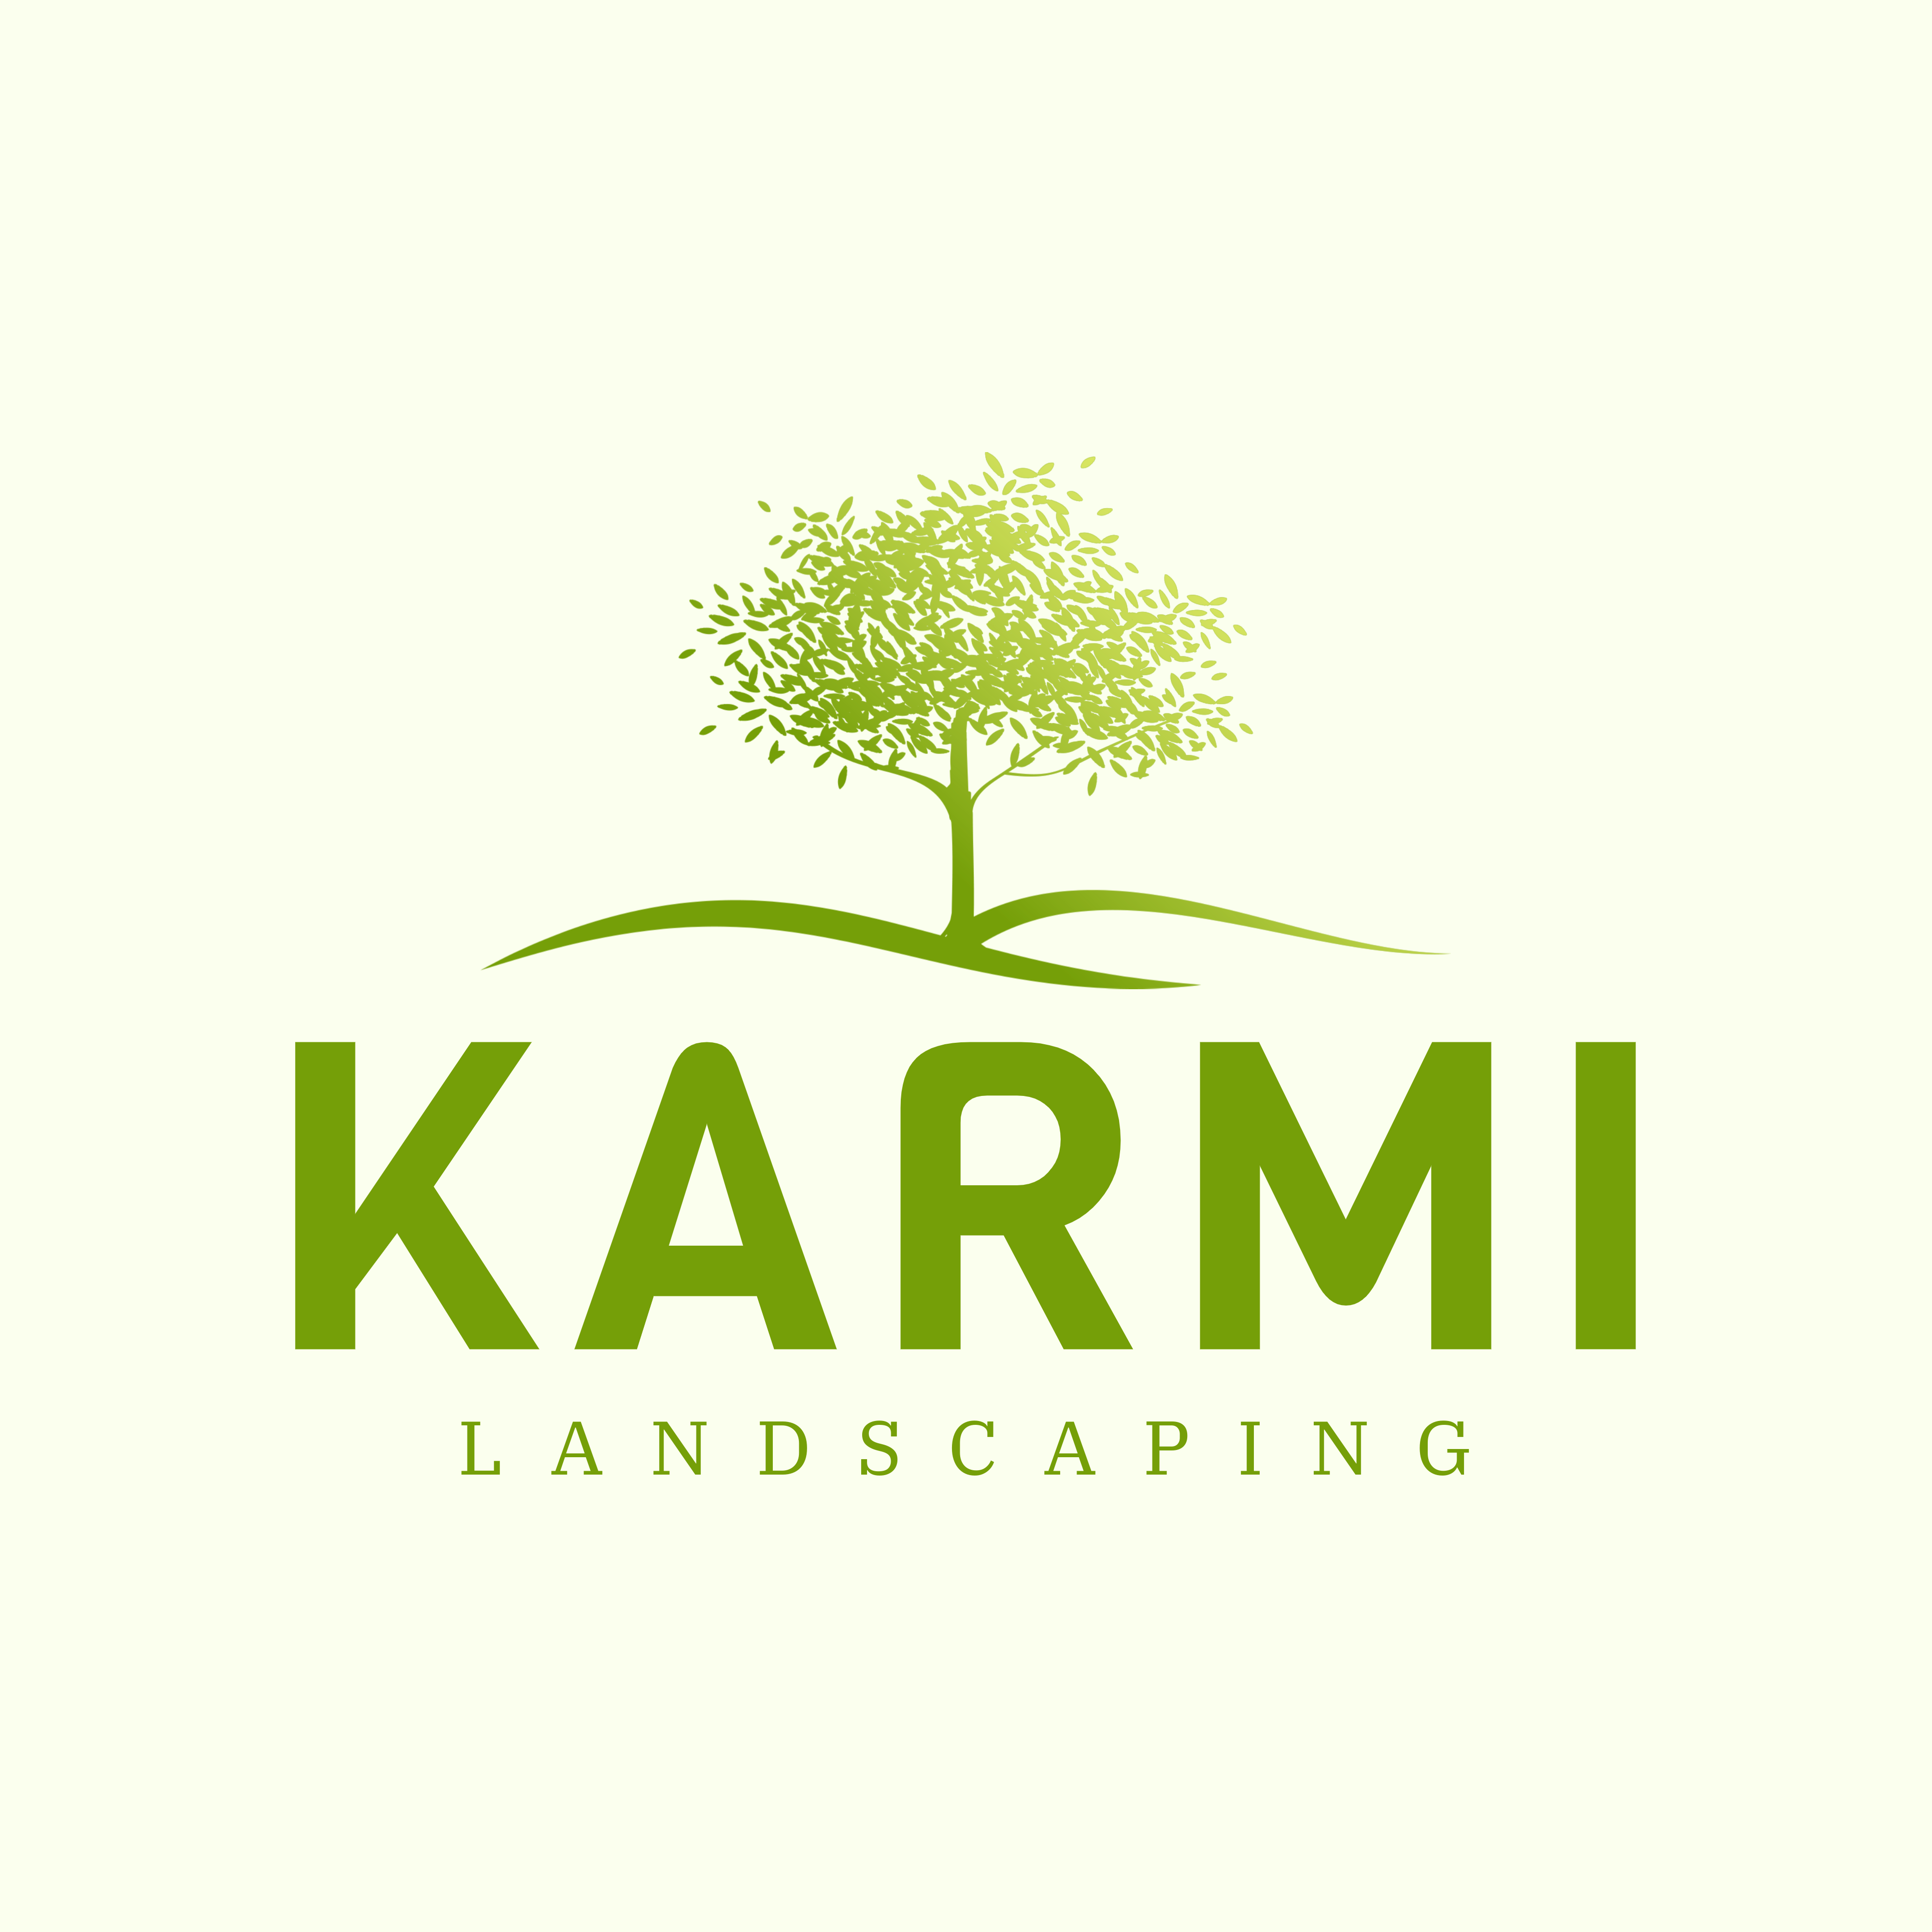 Karmi's logo